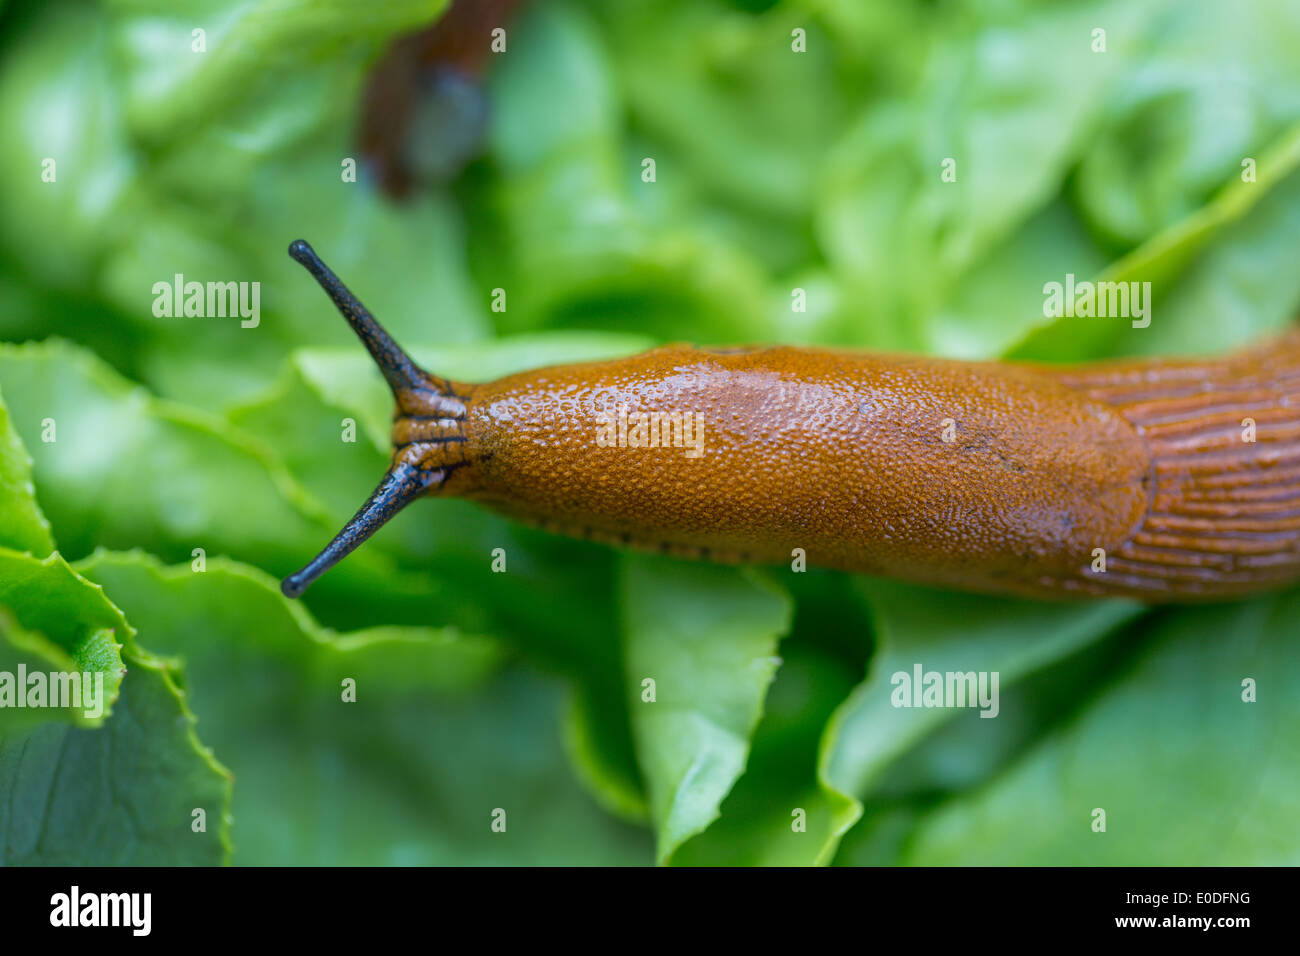 A slug in the garden eats a salad sheet Stock Photo